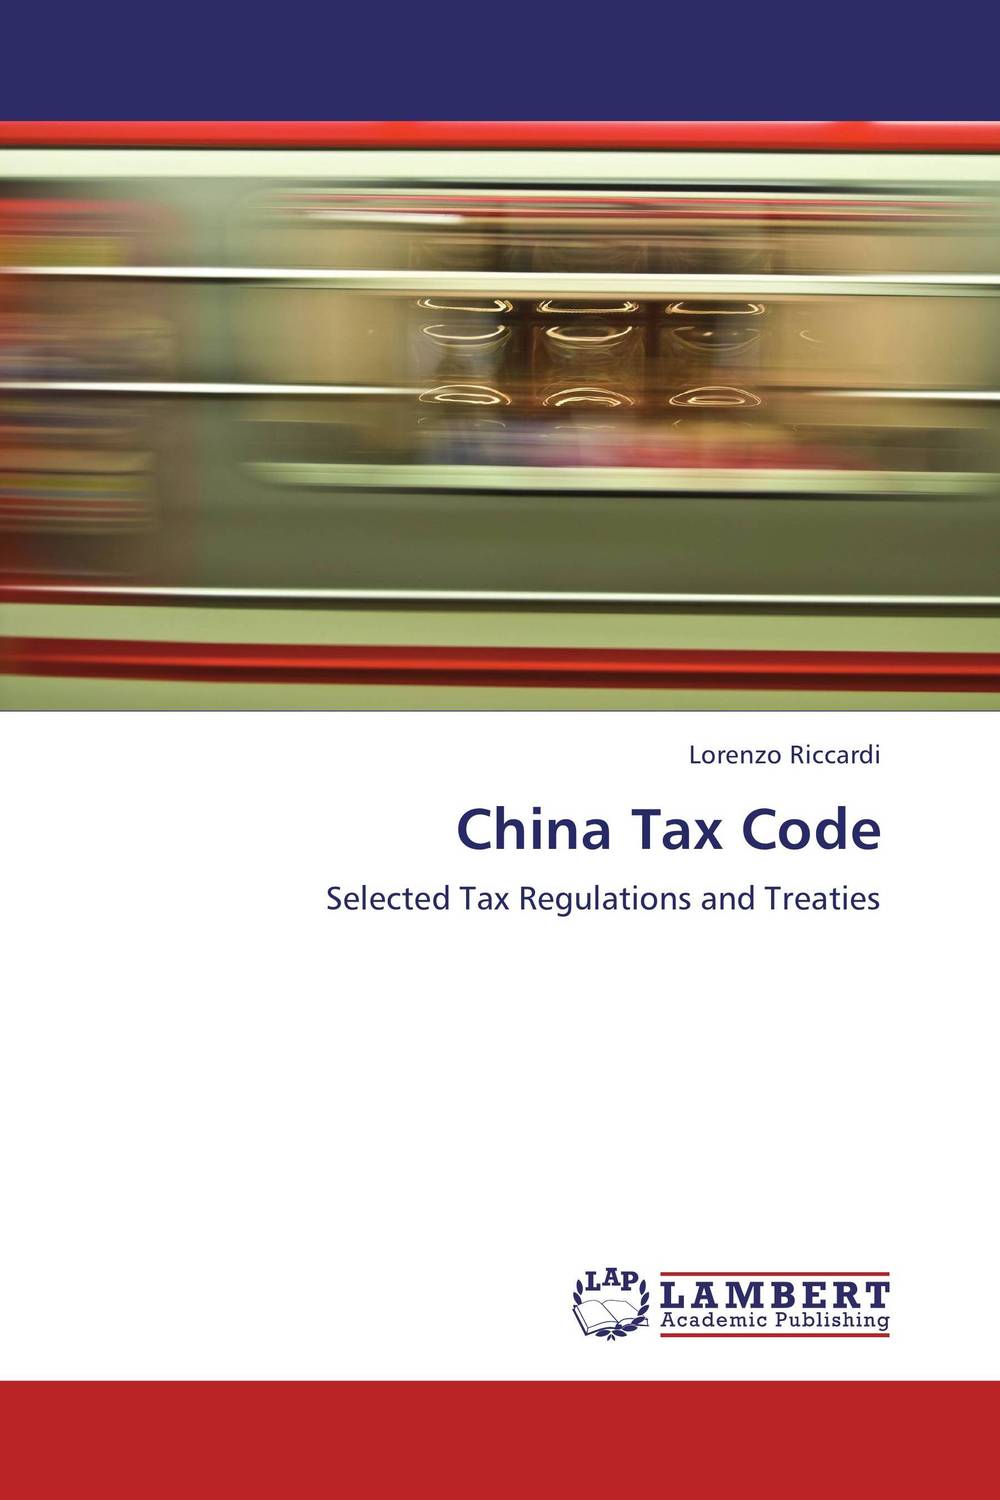 China Tax Code